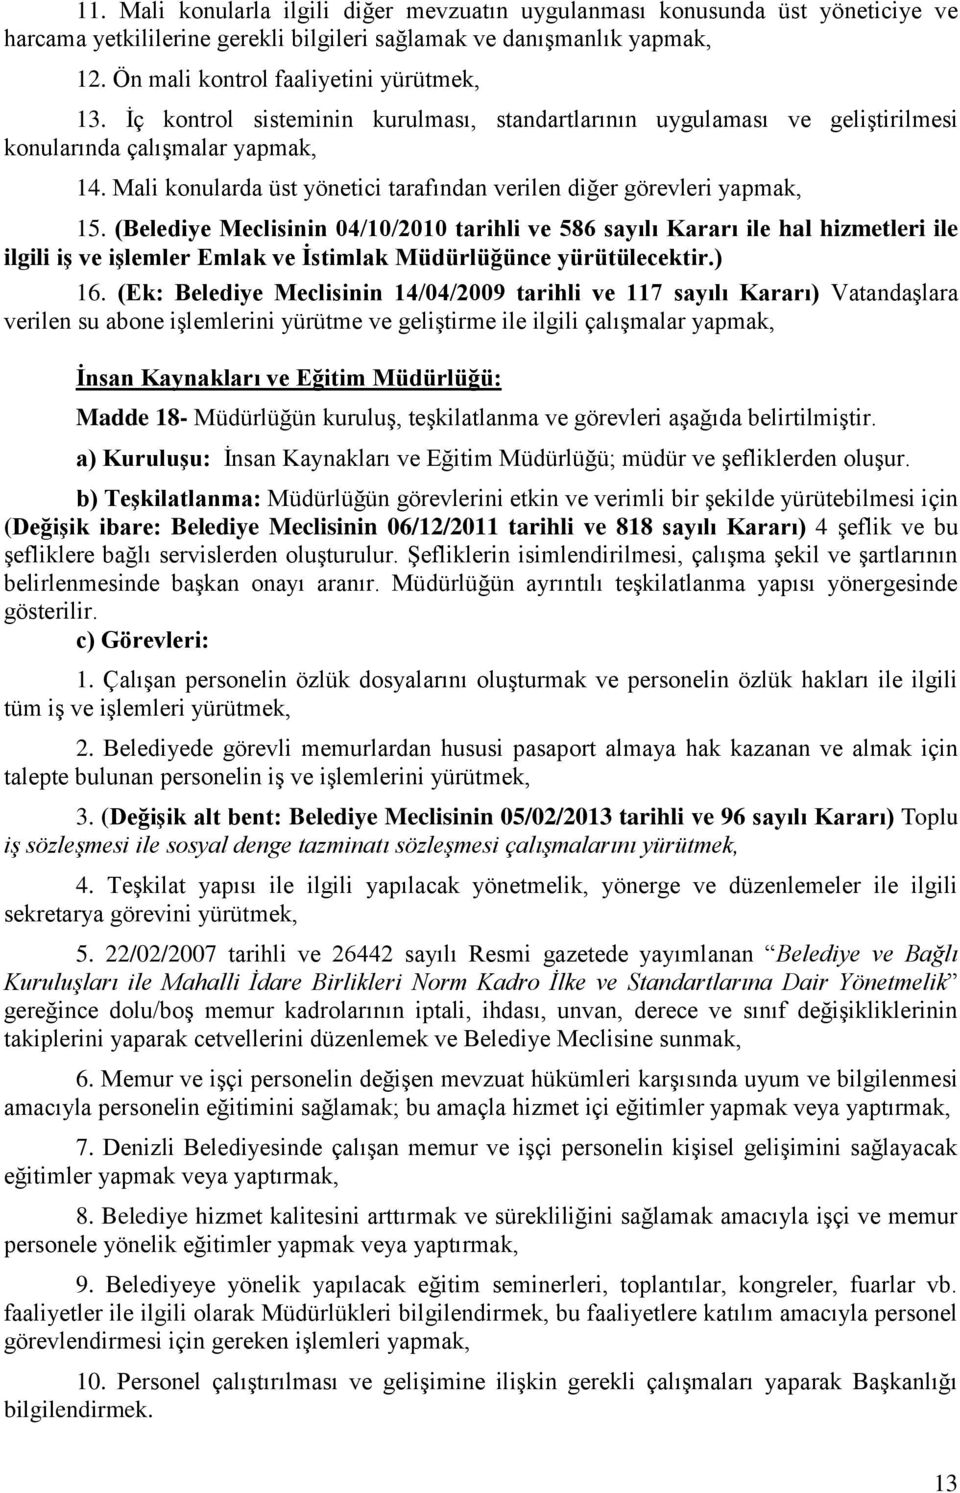 (Belediye Meclisinin 04/10/2010 tarihli ve 586 sayılı Kararı ile hal hizmetleri ile ilgili iģ ve iģlemler Emlak ve Ġstimlak Müdürlüğünce yürütülecektir.) 16.